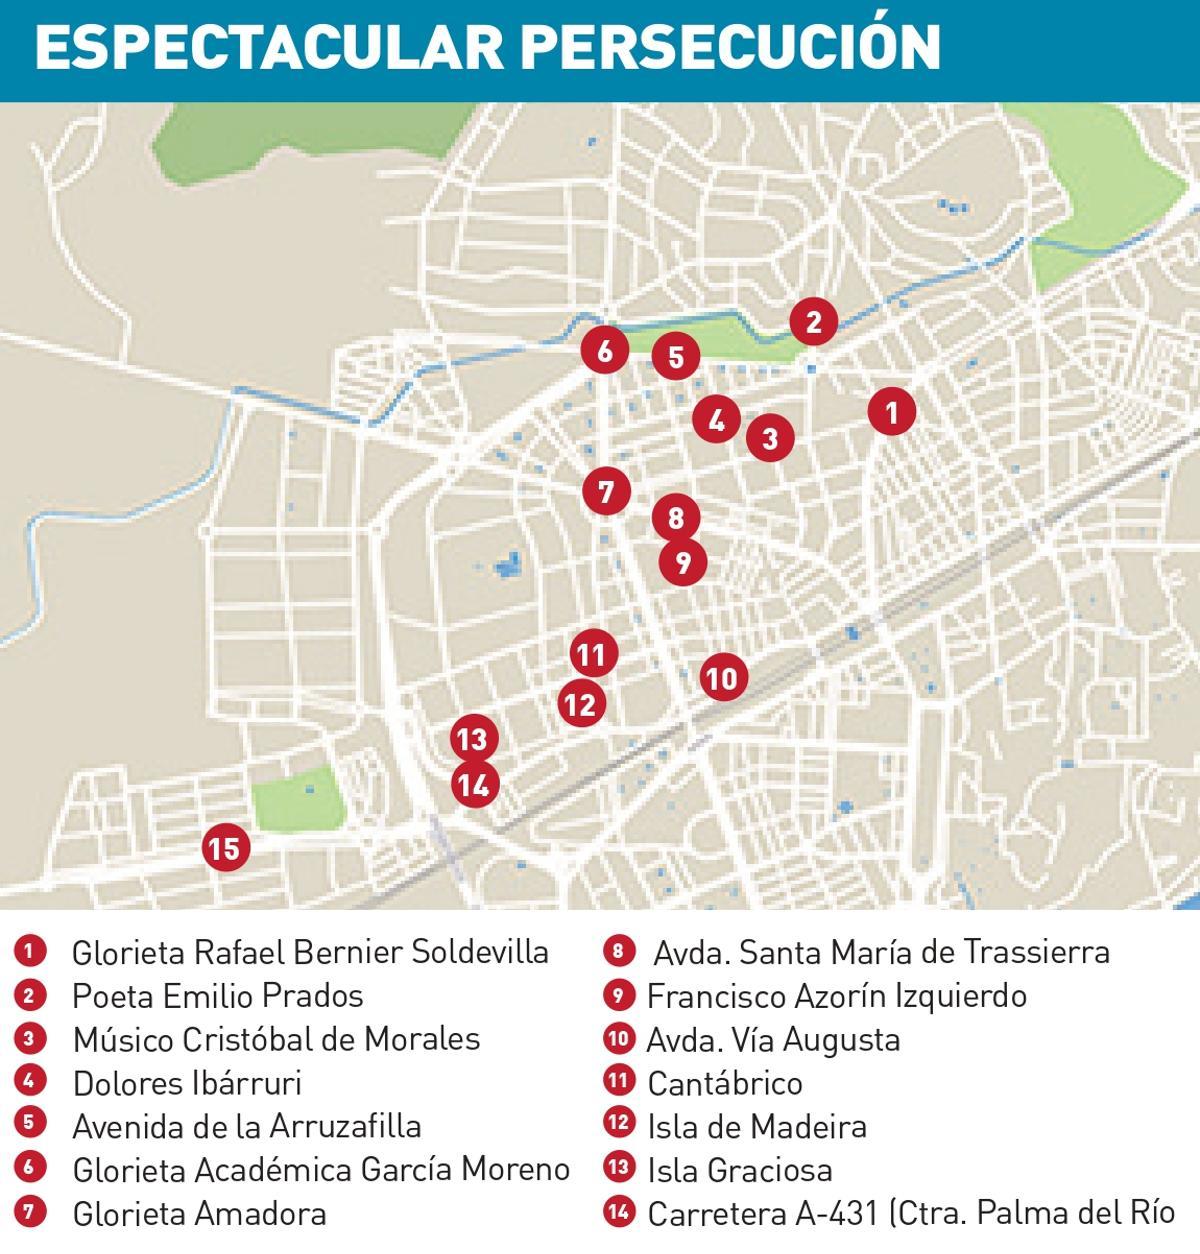 Itinerario de la persecución.